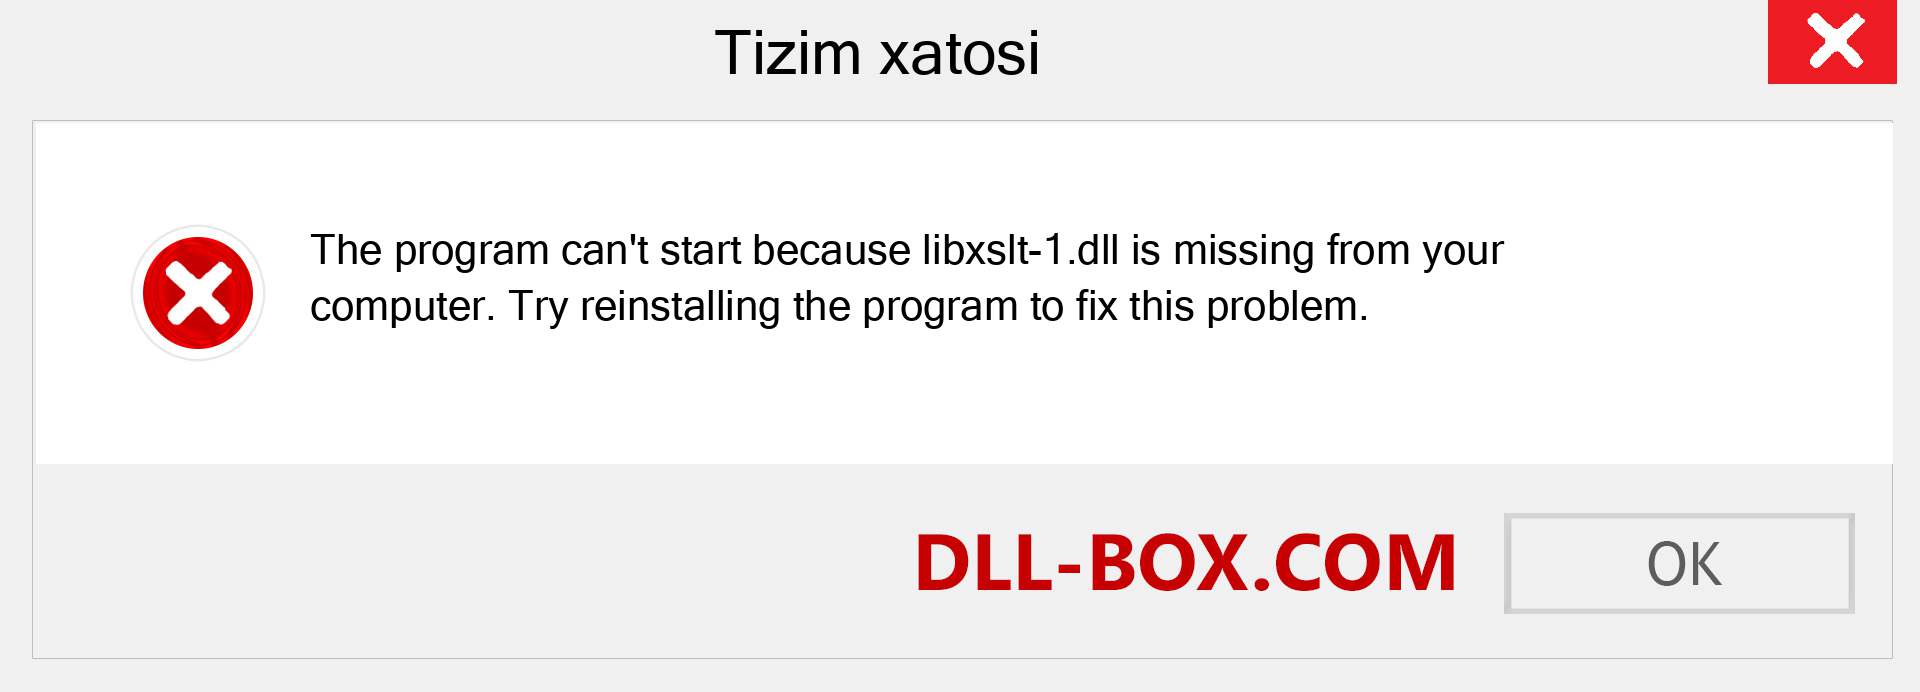 libxslt-1.dll fayli yo'qolganmi?. Windows 7, 8, 10 uchun yuklab olish - Windowsda libxslt-1 dll etishmayotgan xatoni tuzating, rasmlar, rasmlar